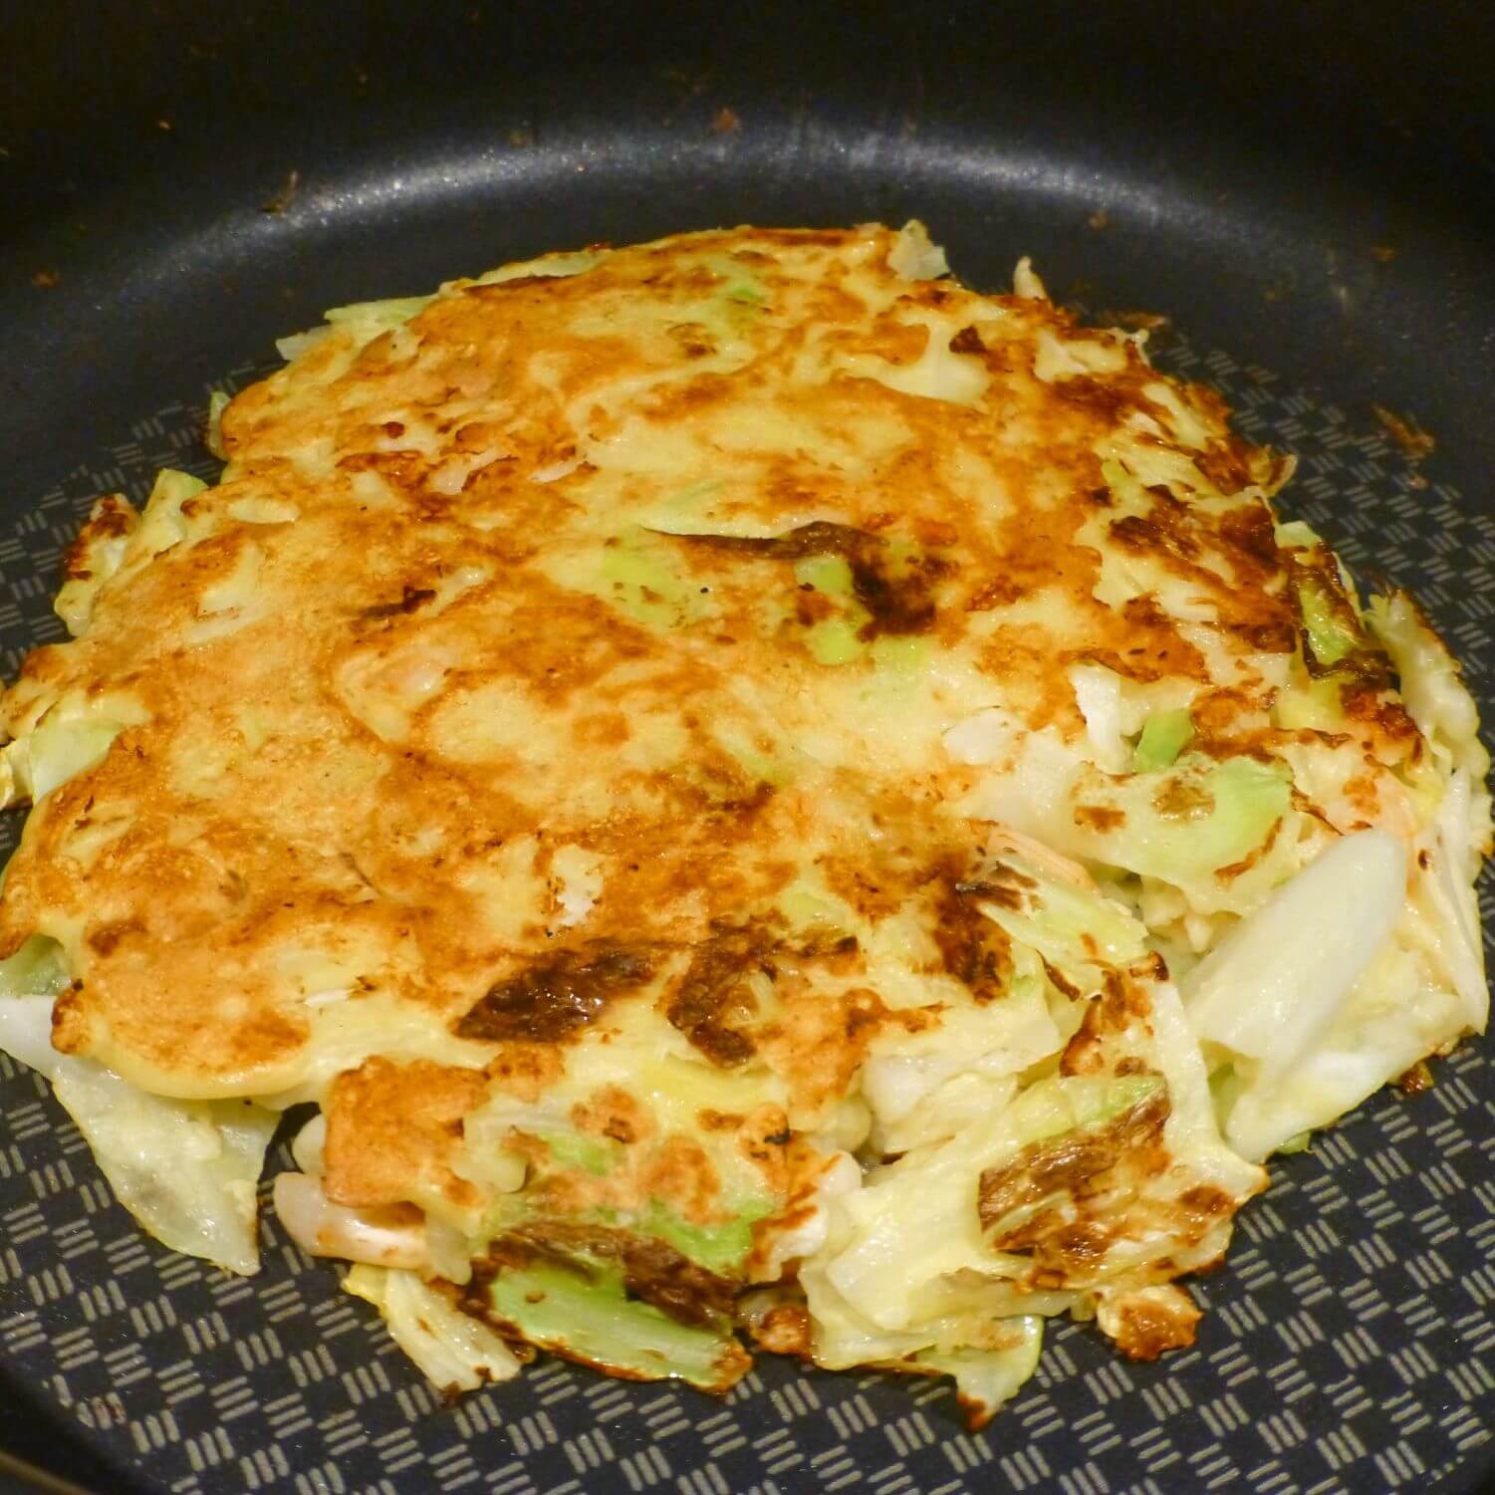 Cooking the Okonomiyaki Part 2